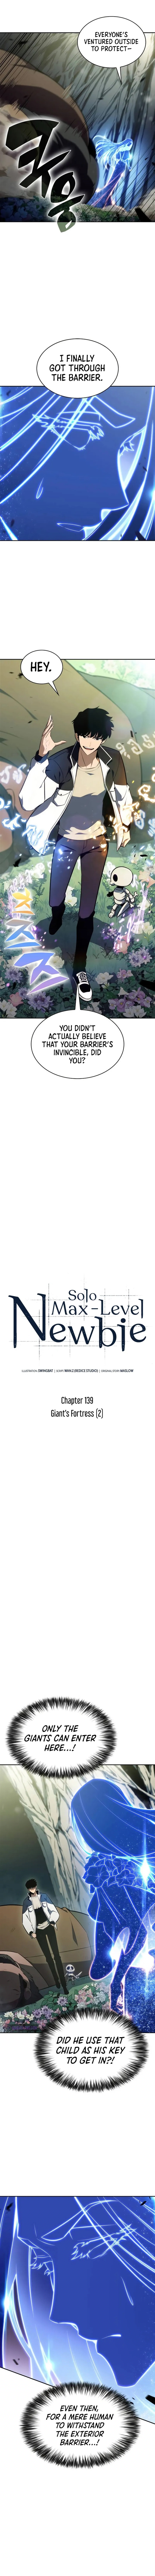 Solo Max Level Newbie 139 5